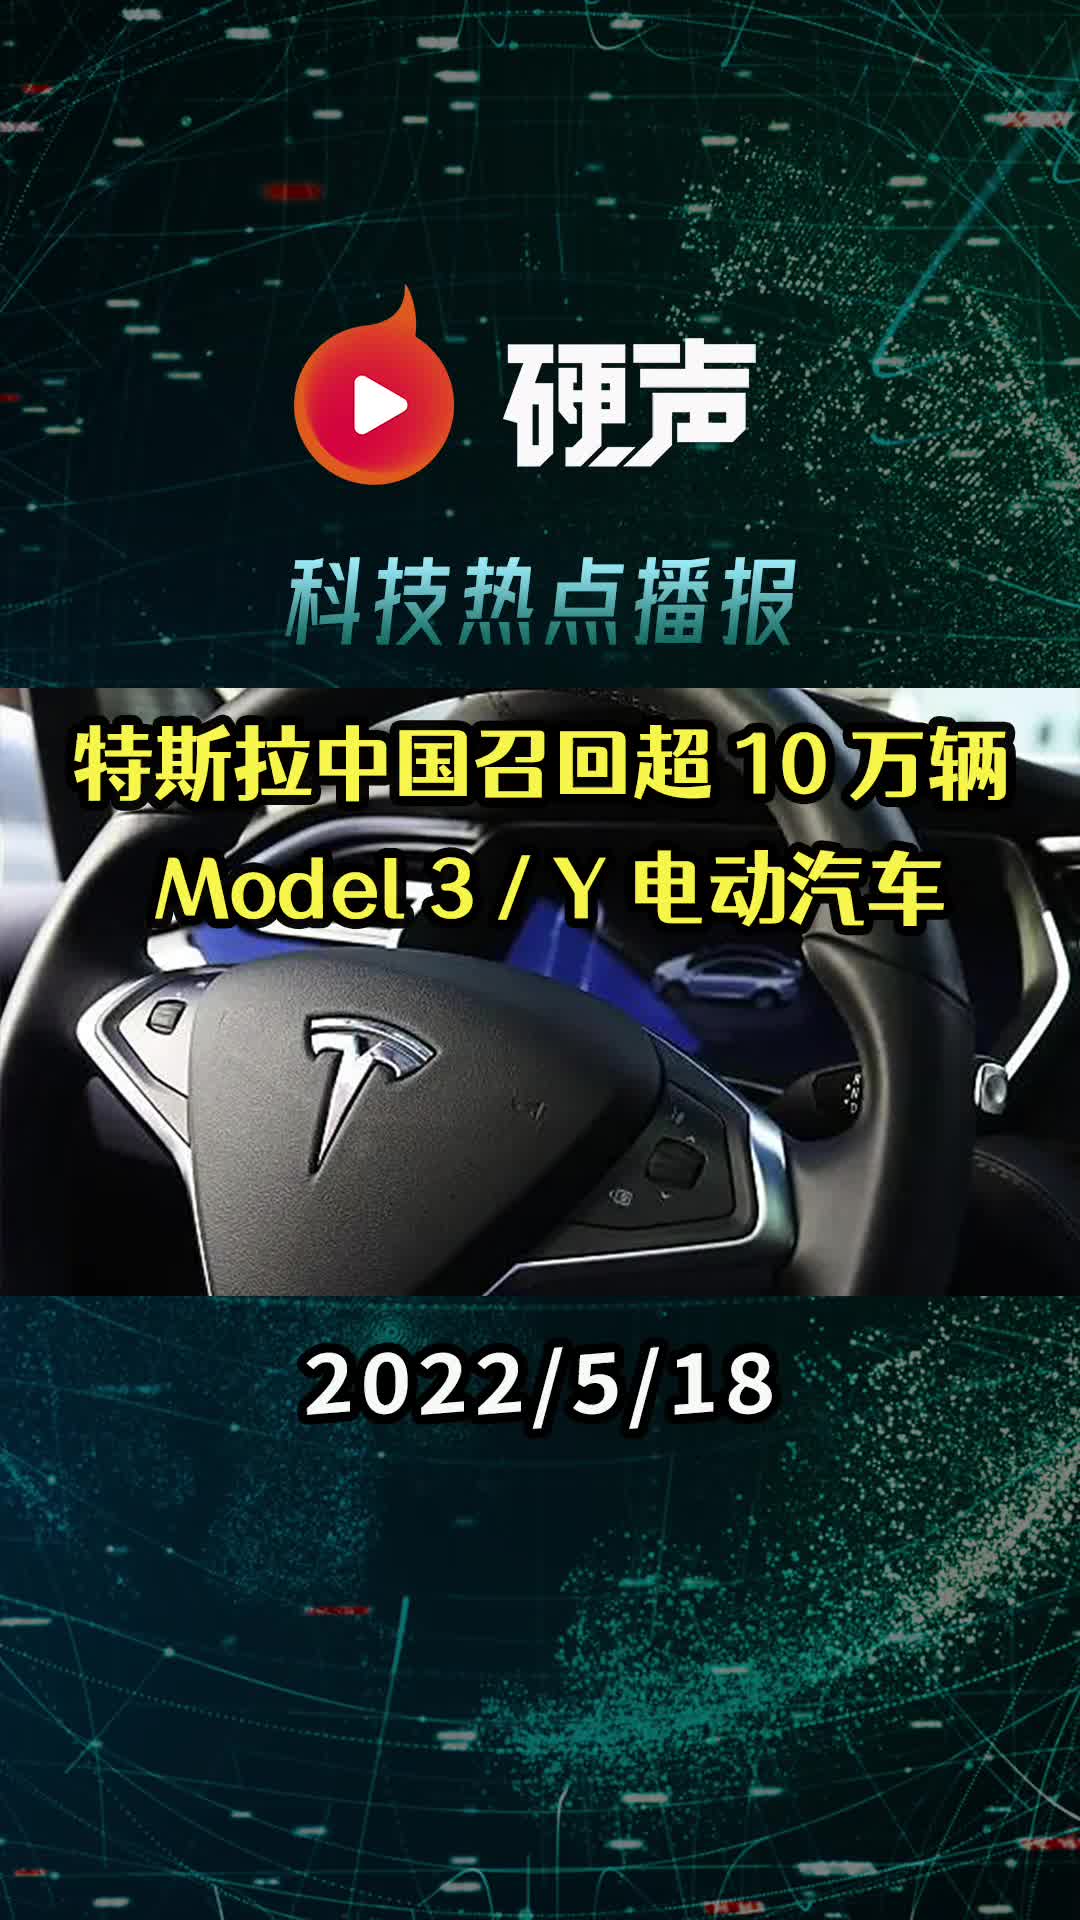 特斯拉中國召回超 10 萬輛國產Model 3 / Y 電動汽車;上游原材料成本飆漲,半導體零部件交付周期延長